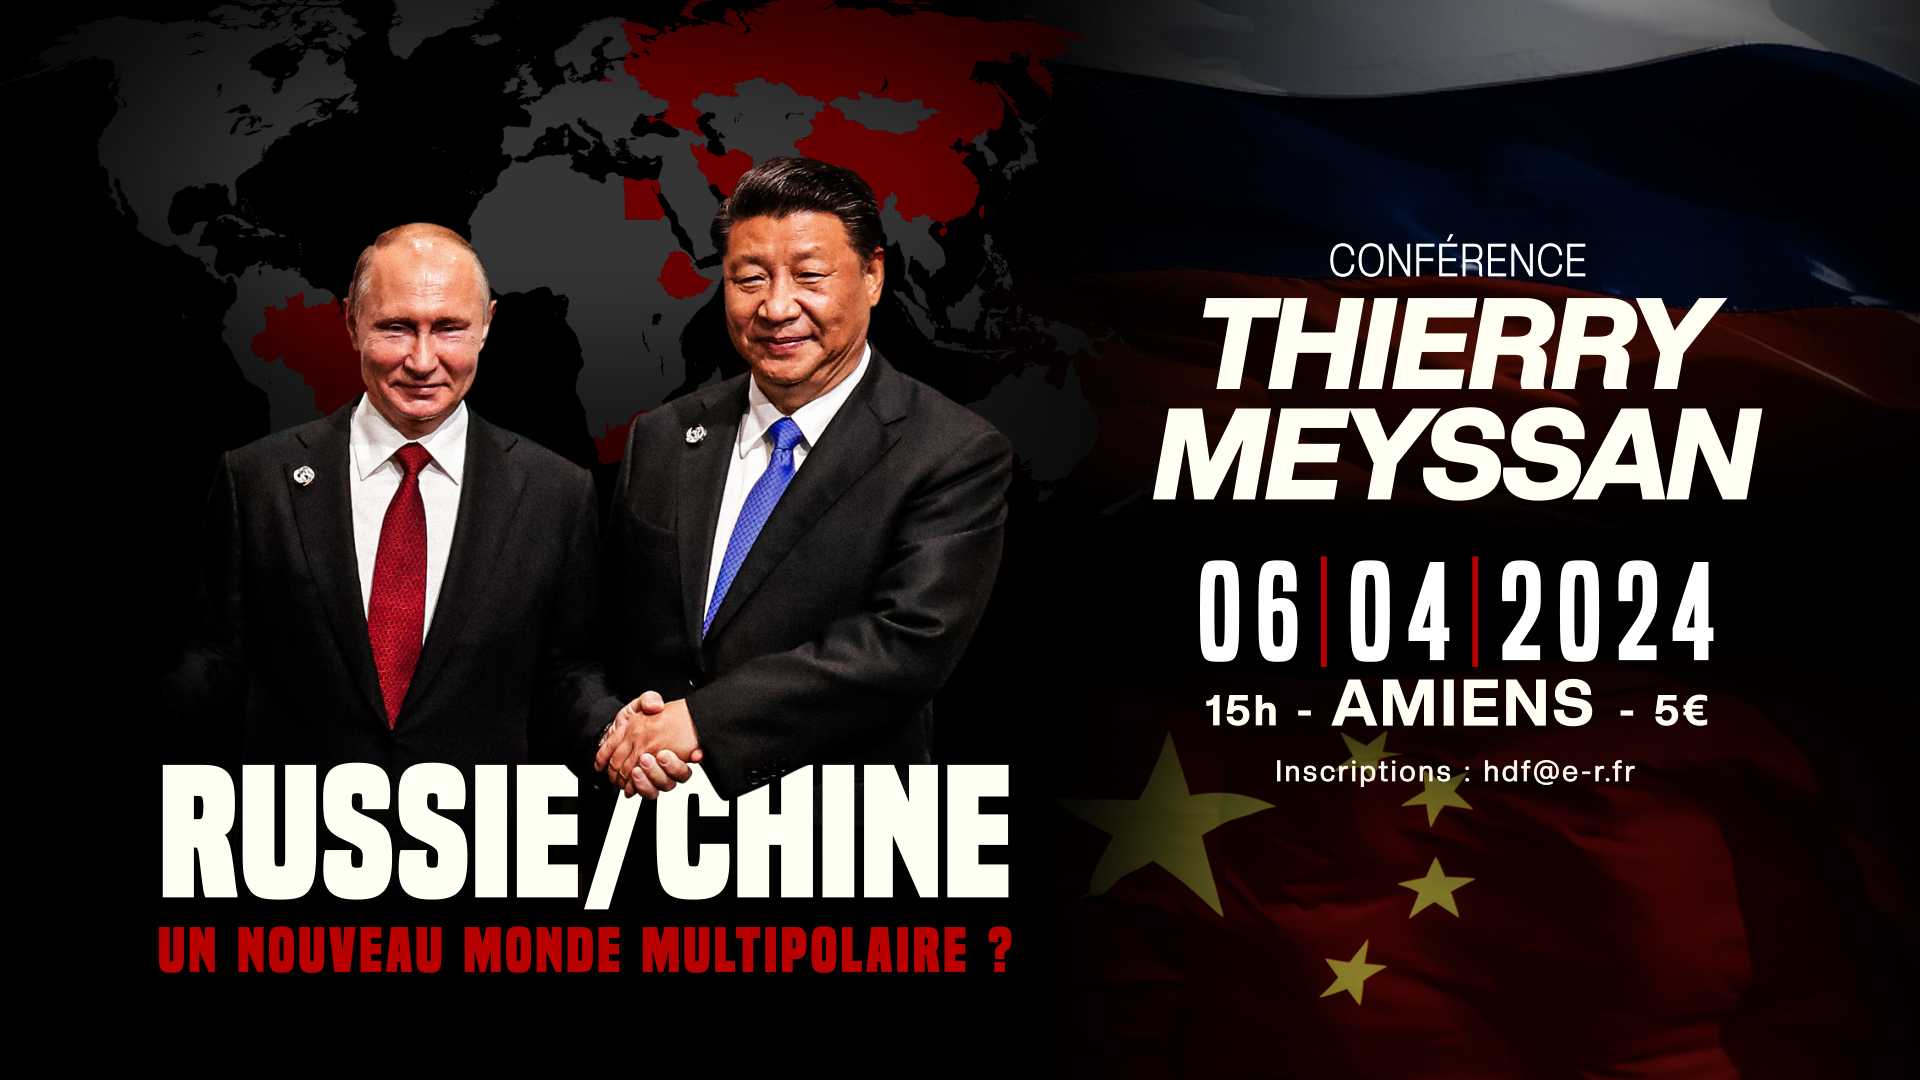 Russie/Chine : un nouveau monde multipolaire ? – Conférence de Thierry Meyssan à Amiens